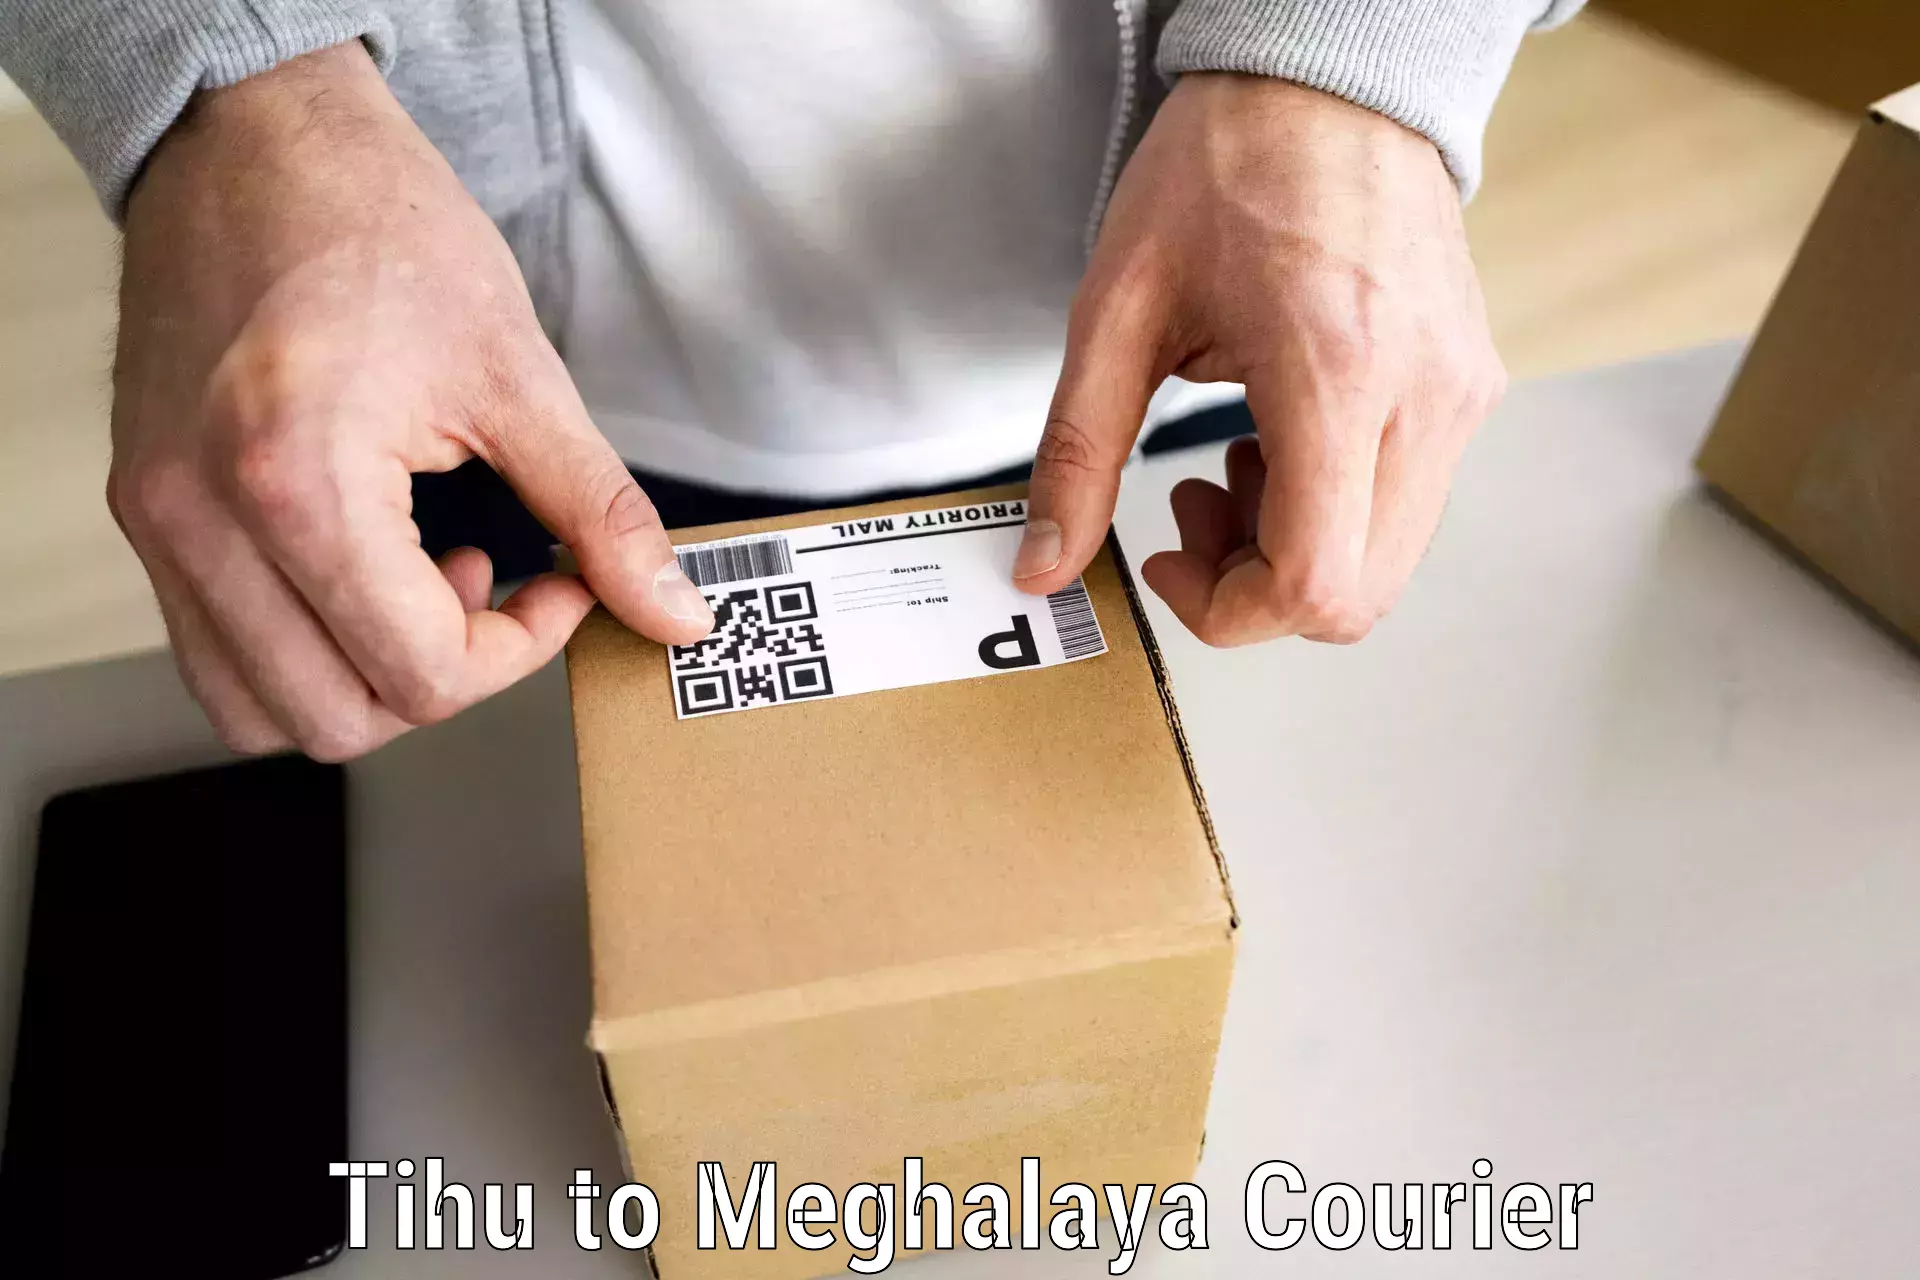 Easy furniture transport in Tihu to Meghalaya